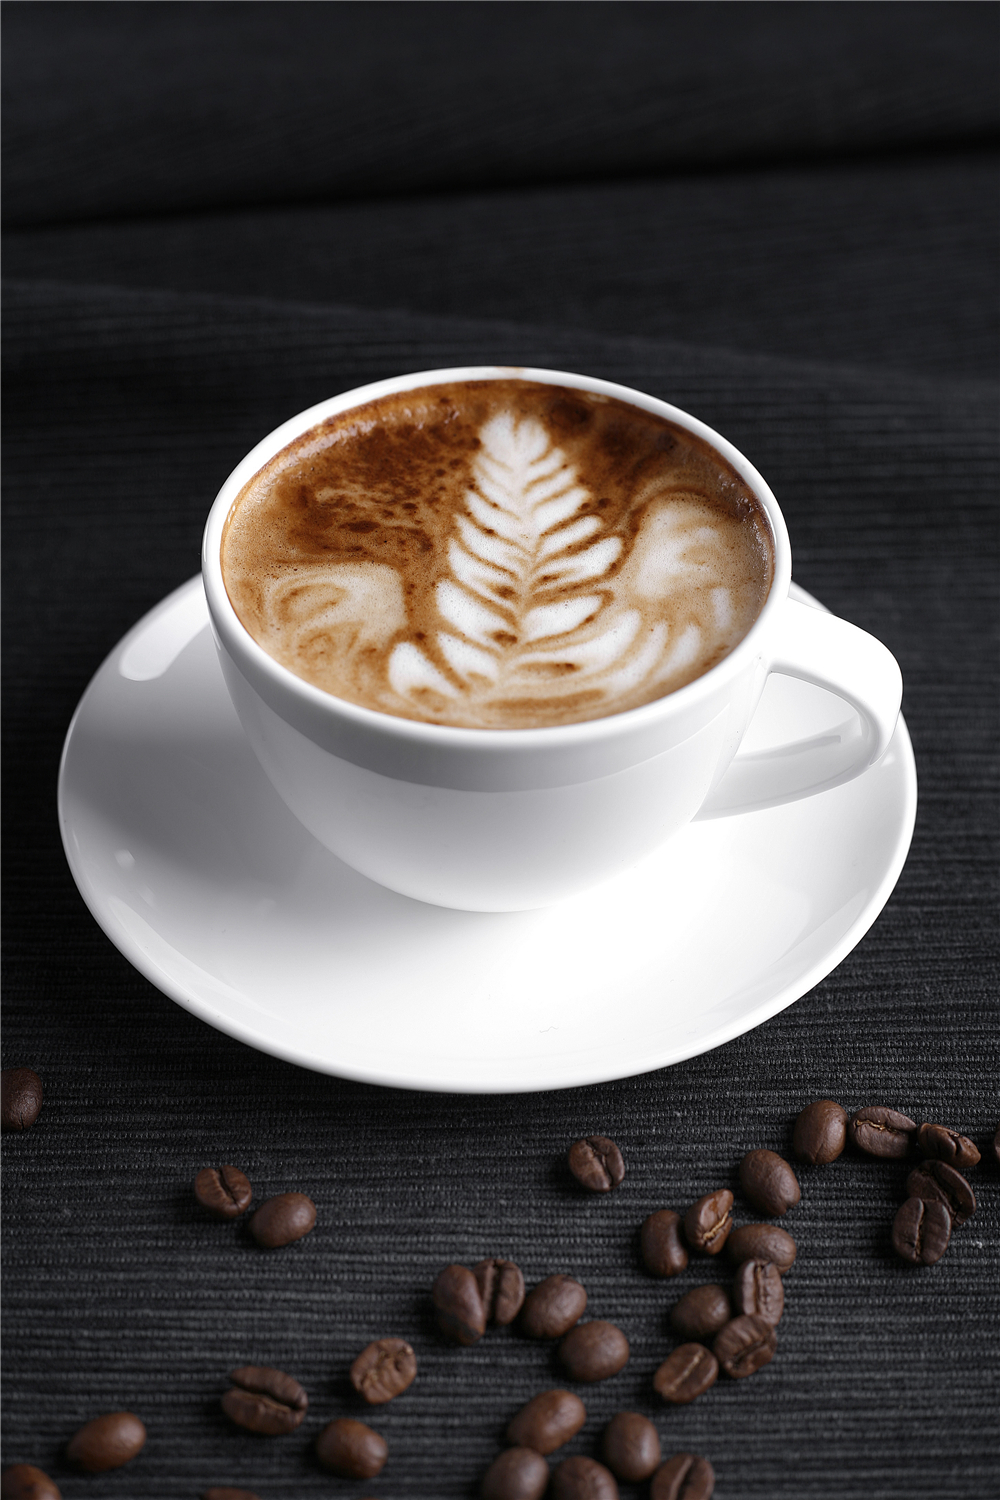 国人一年喝多米体育掉30万吨咖啡九块九的咖啡究竟能卷多久？